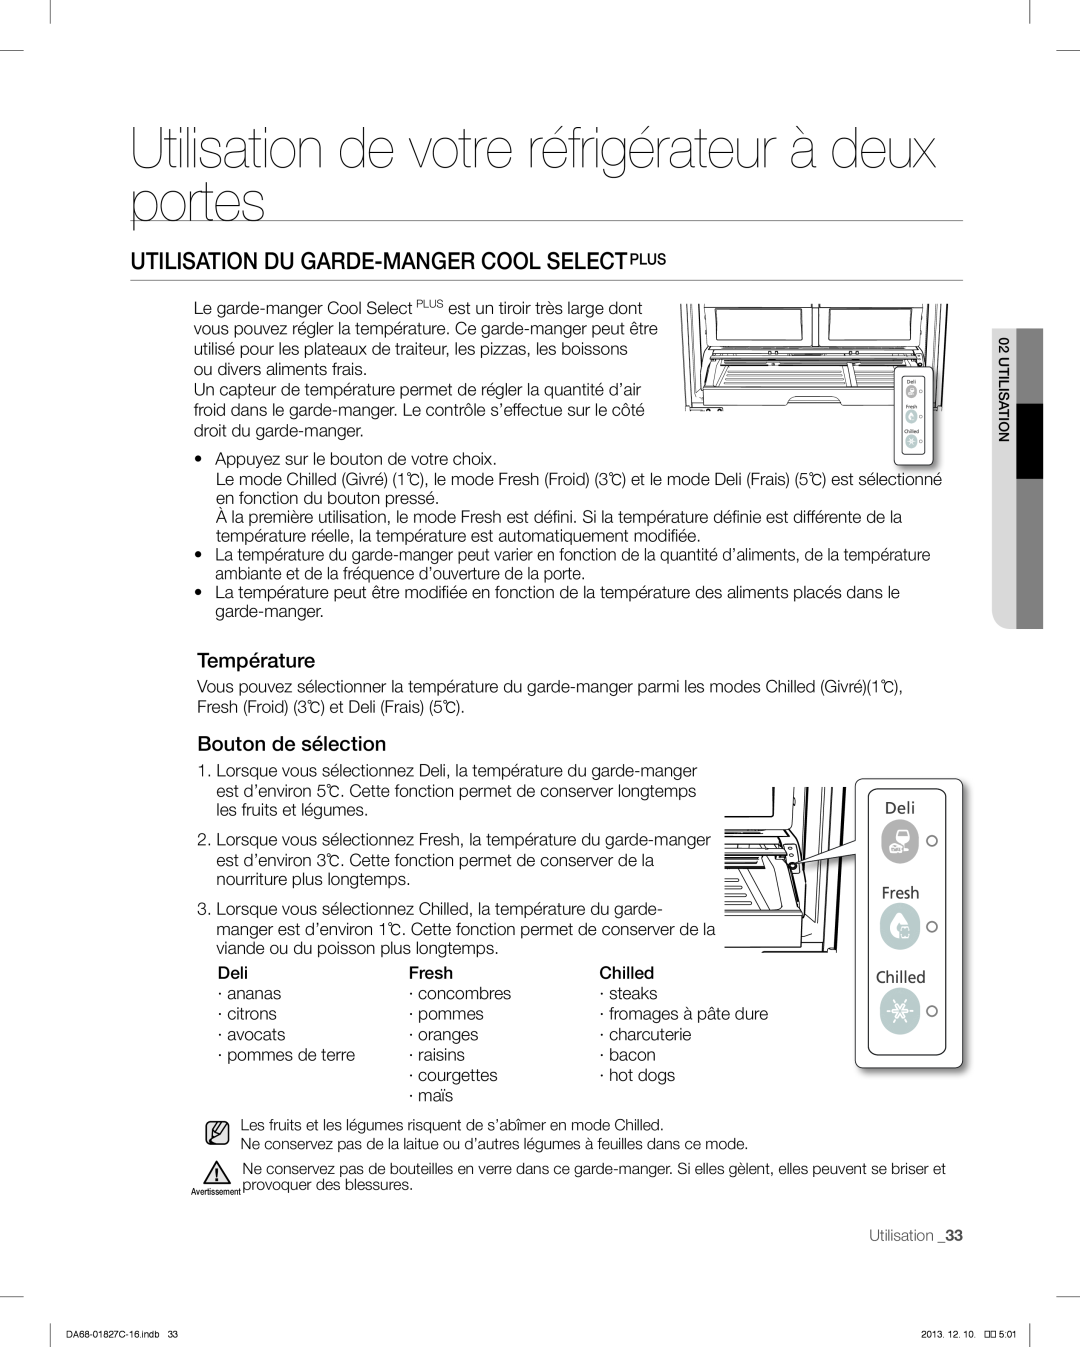 Samsung RFG237AARS user manual Utilisation Du Garde-Mangercool Selectplus, Utilisation de votre réfrigérateur à deux portes 